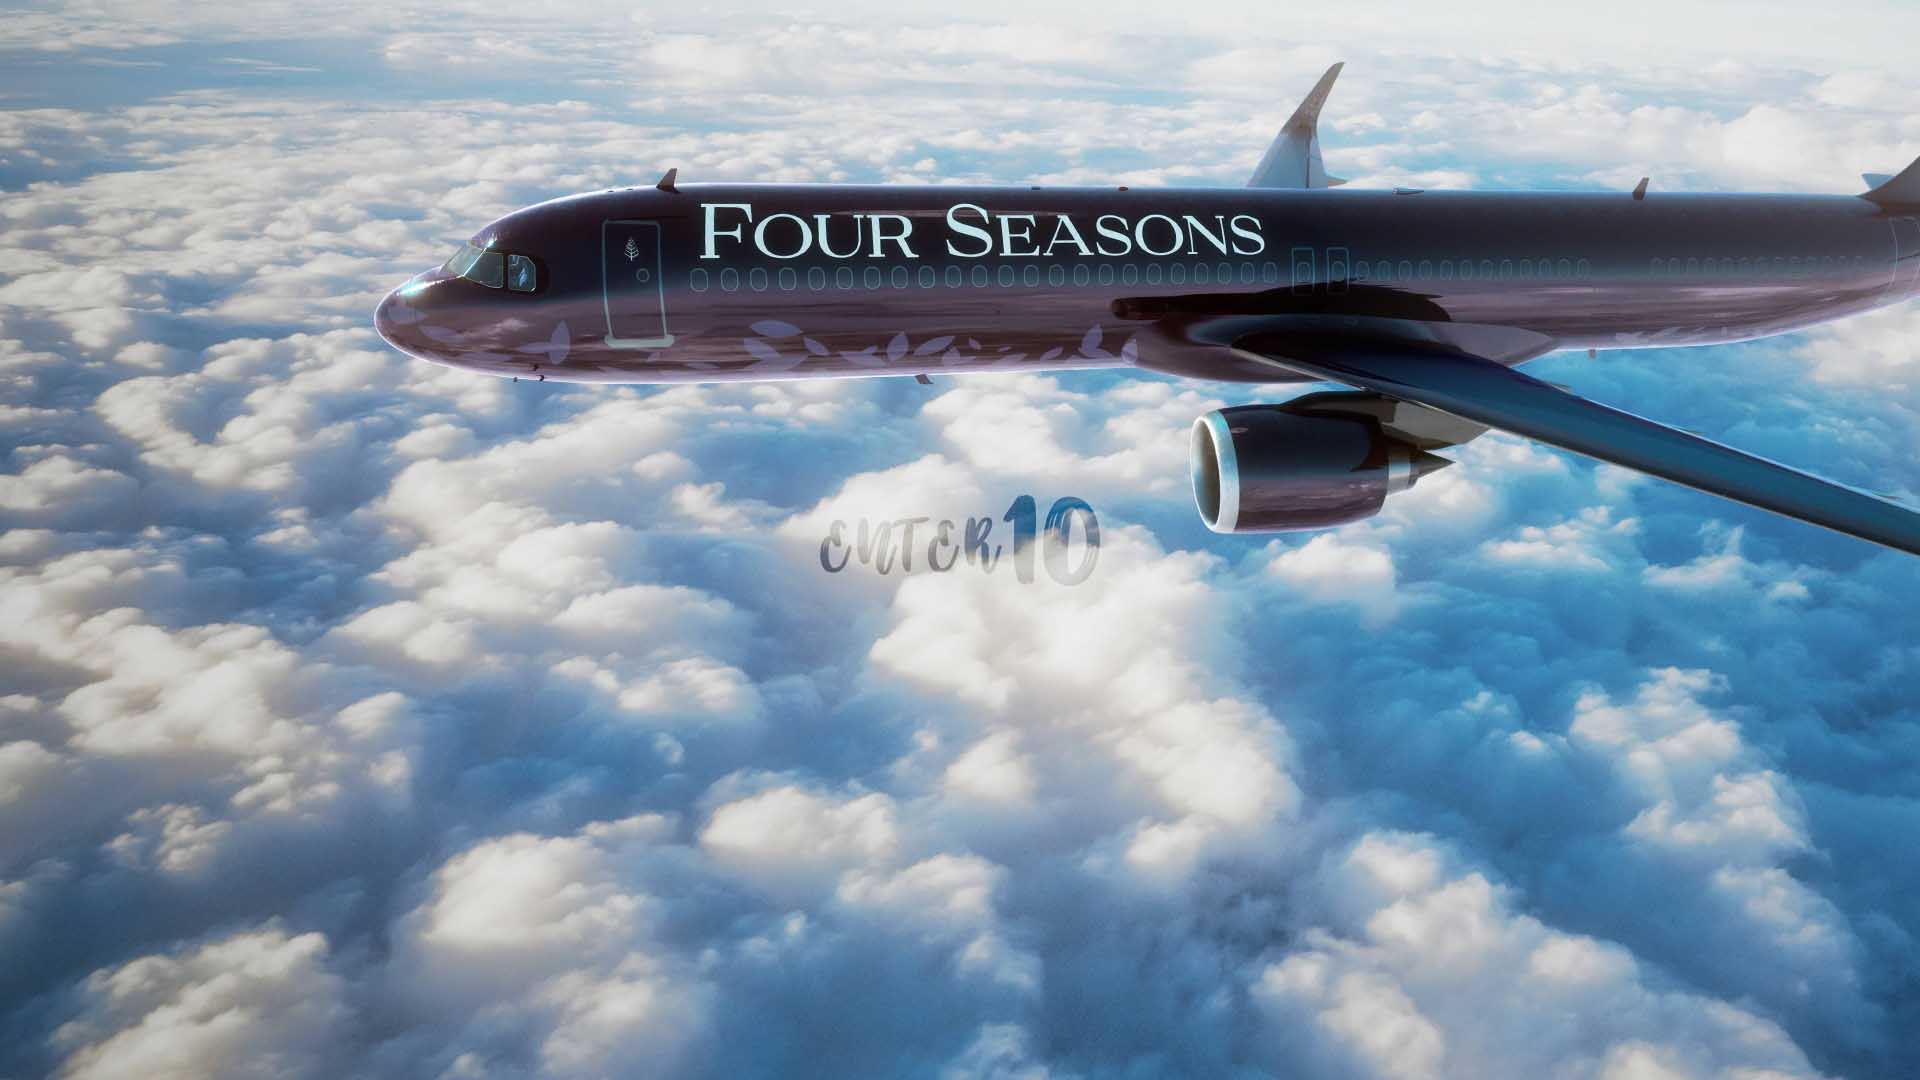 Невероятные путешествия по всему миру на роскошном самолете Four Seasons